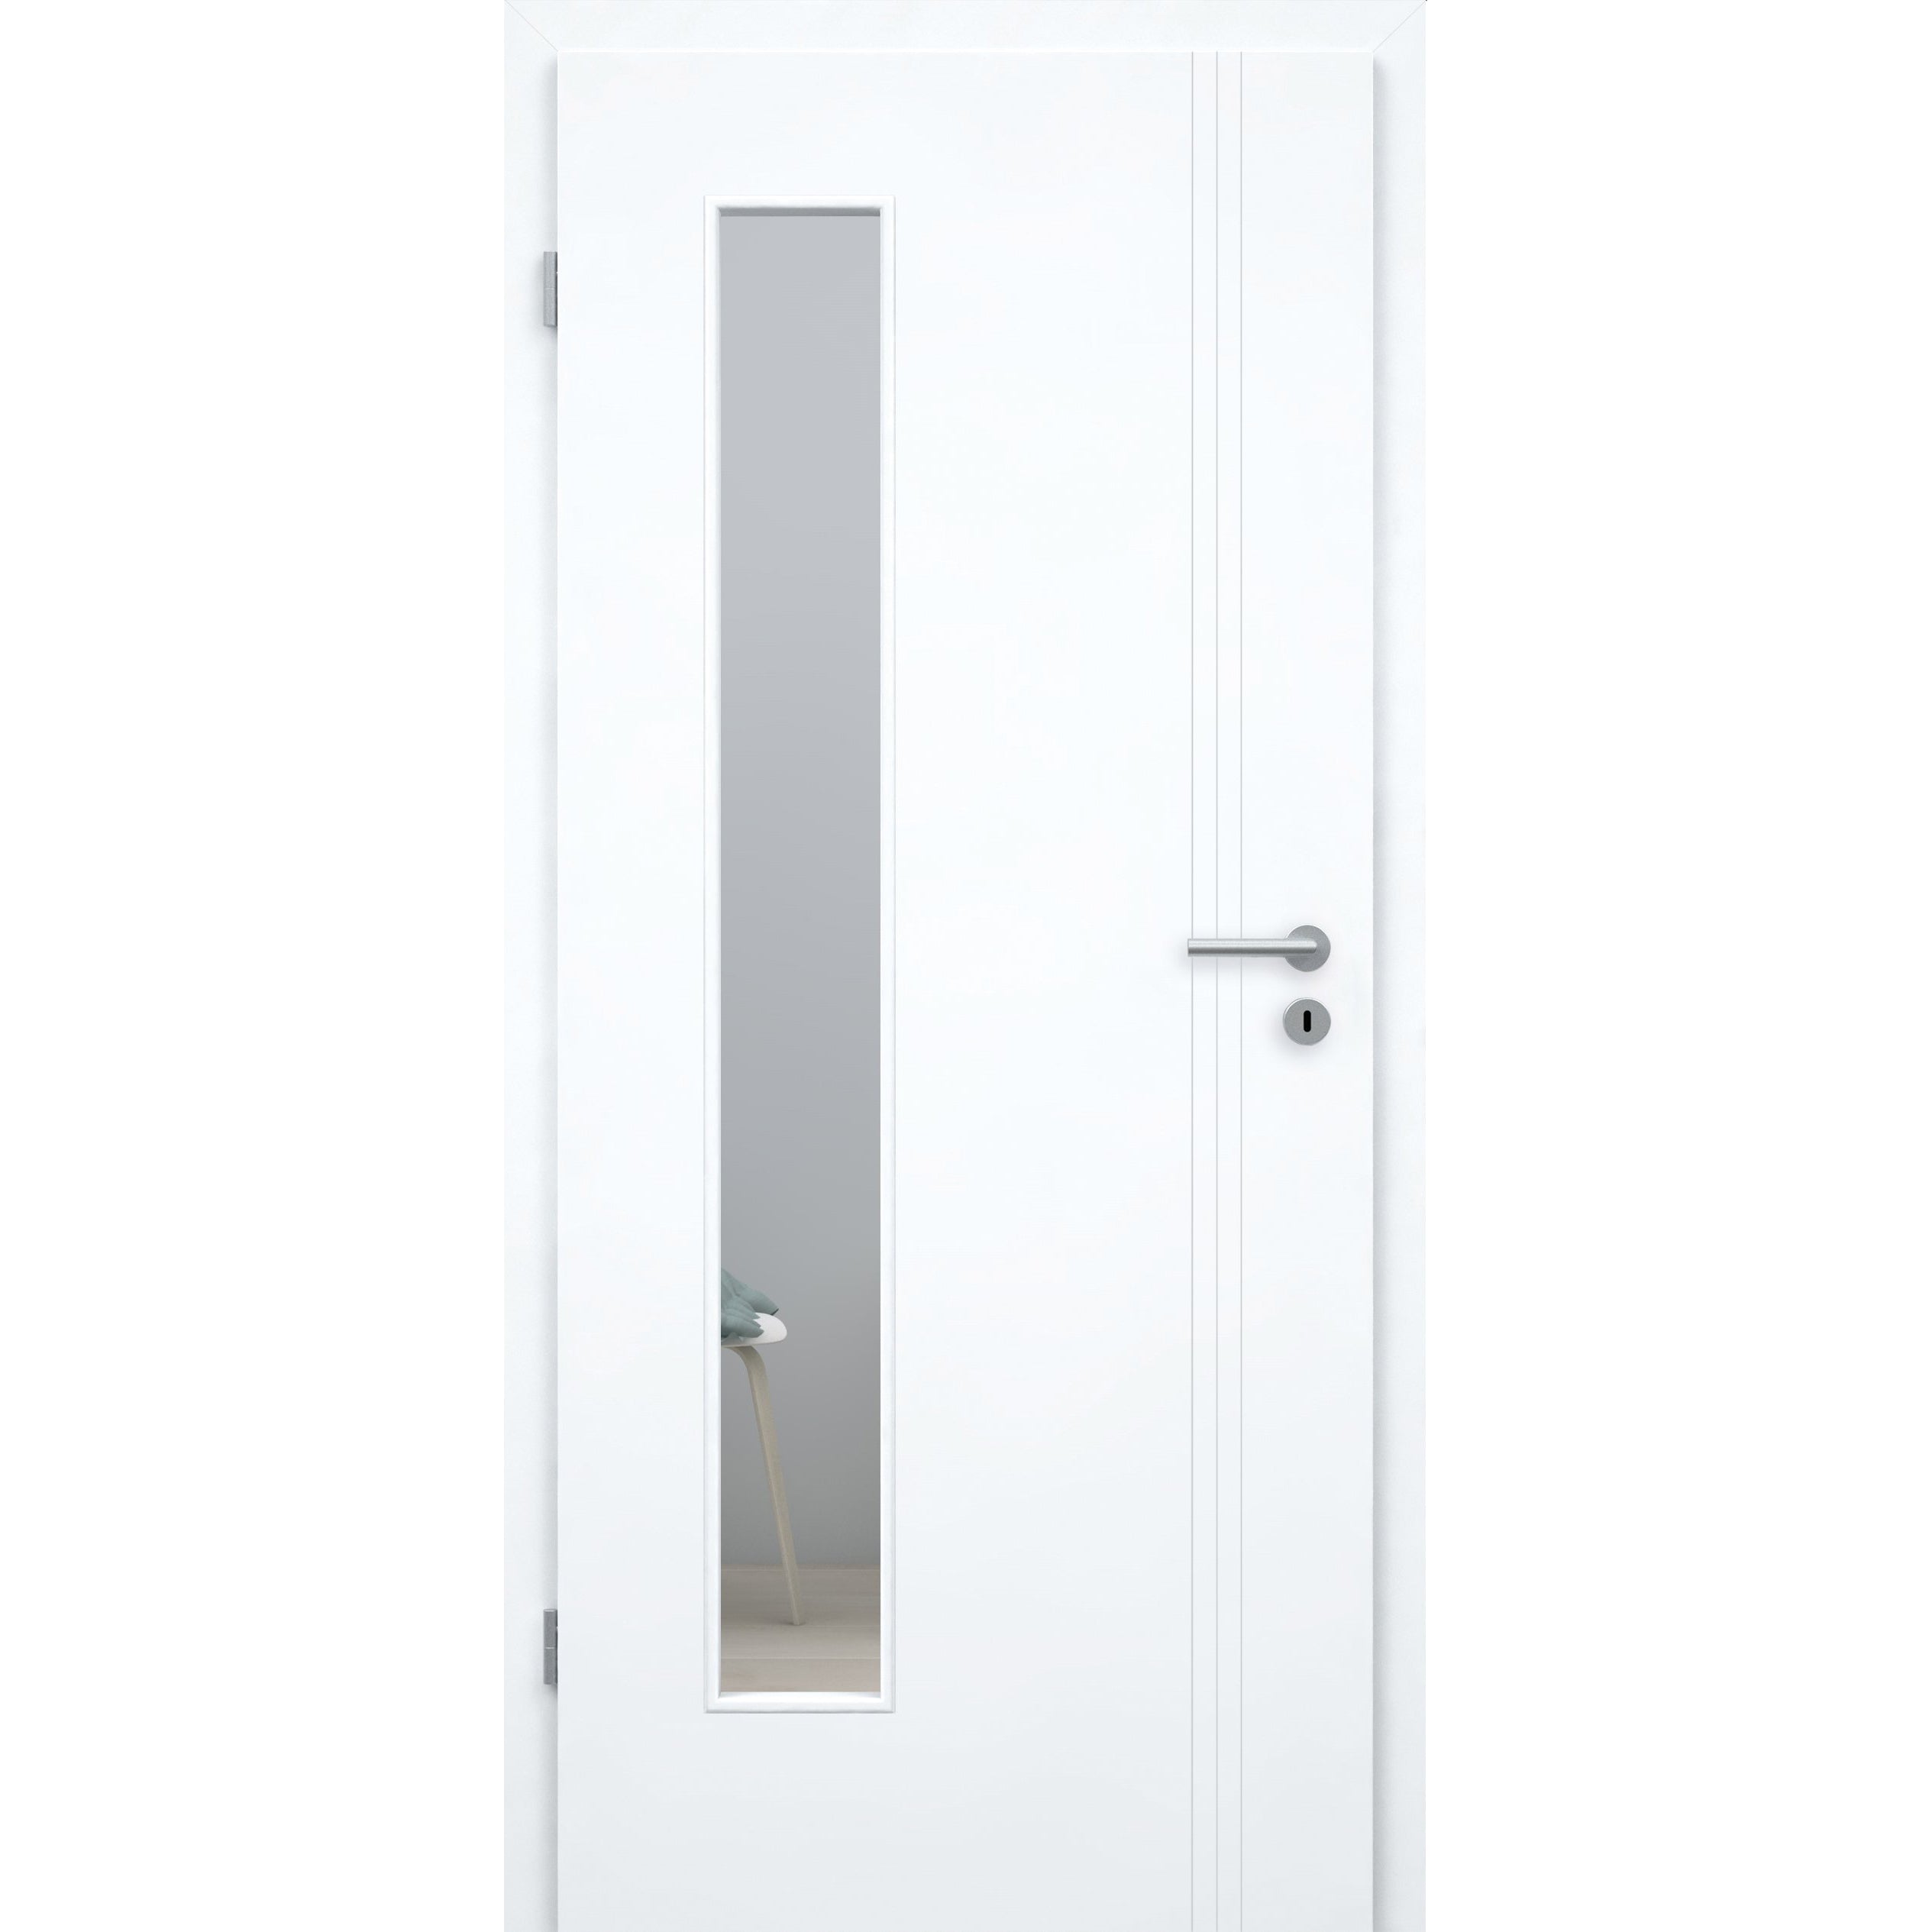 Zimmertür mit Zarge und Lichtausschnitt brillant-weiß 3 Rillen aufrecht Schlossseite Designkante - Modell Designtür VS33LAB